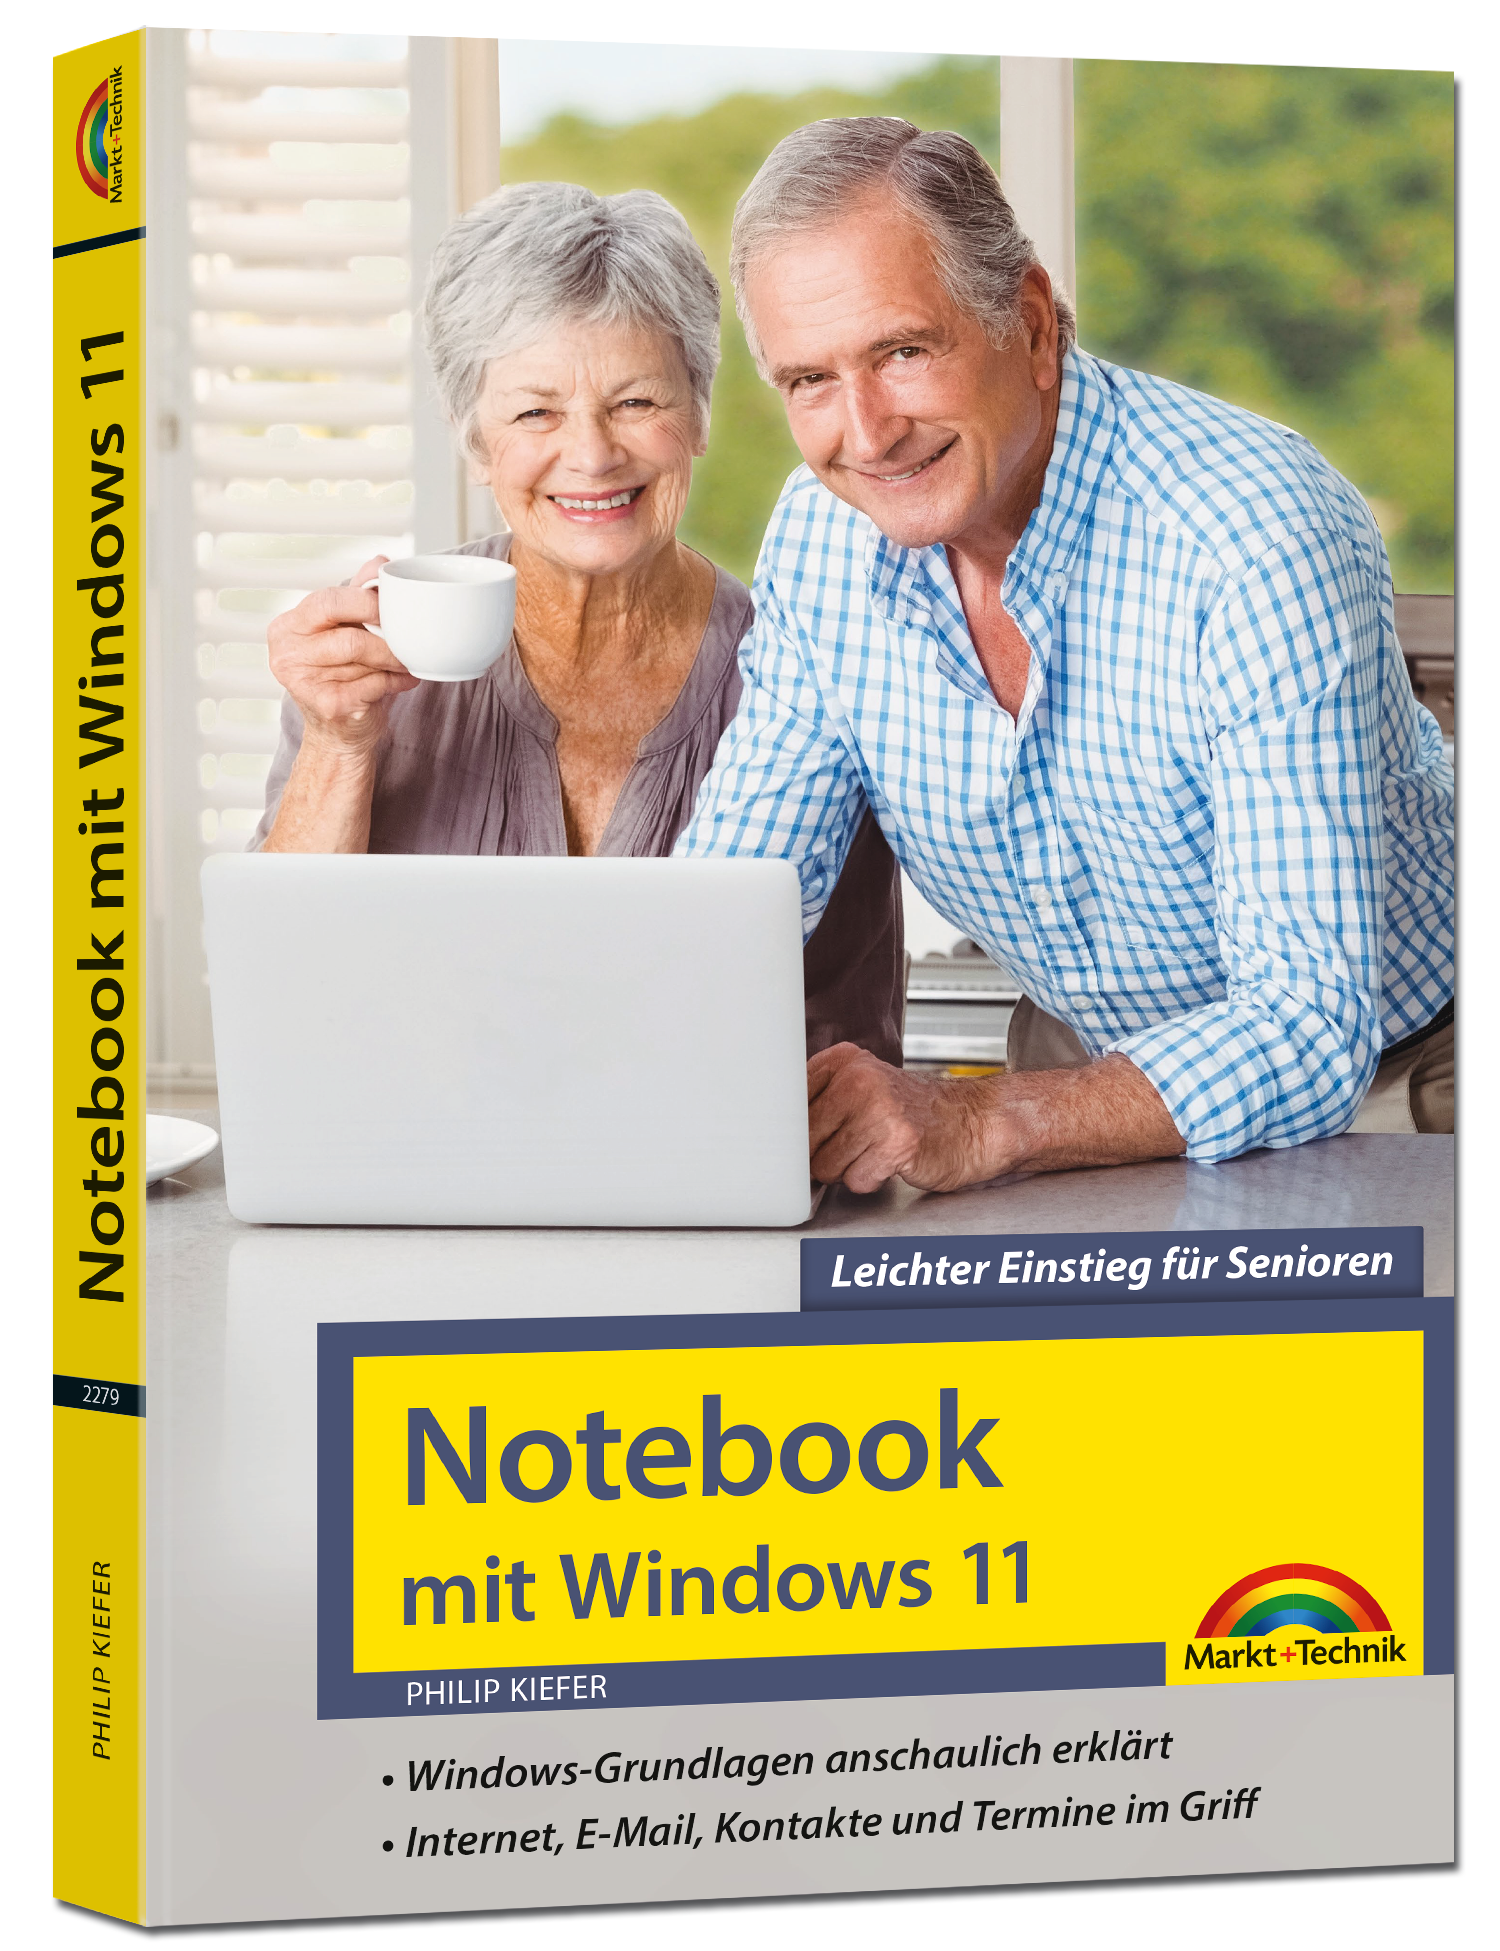  Notebook mit Windows 11 - Leichter Einstieg für Senioren 